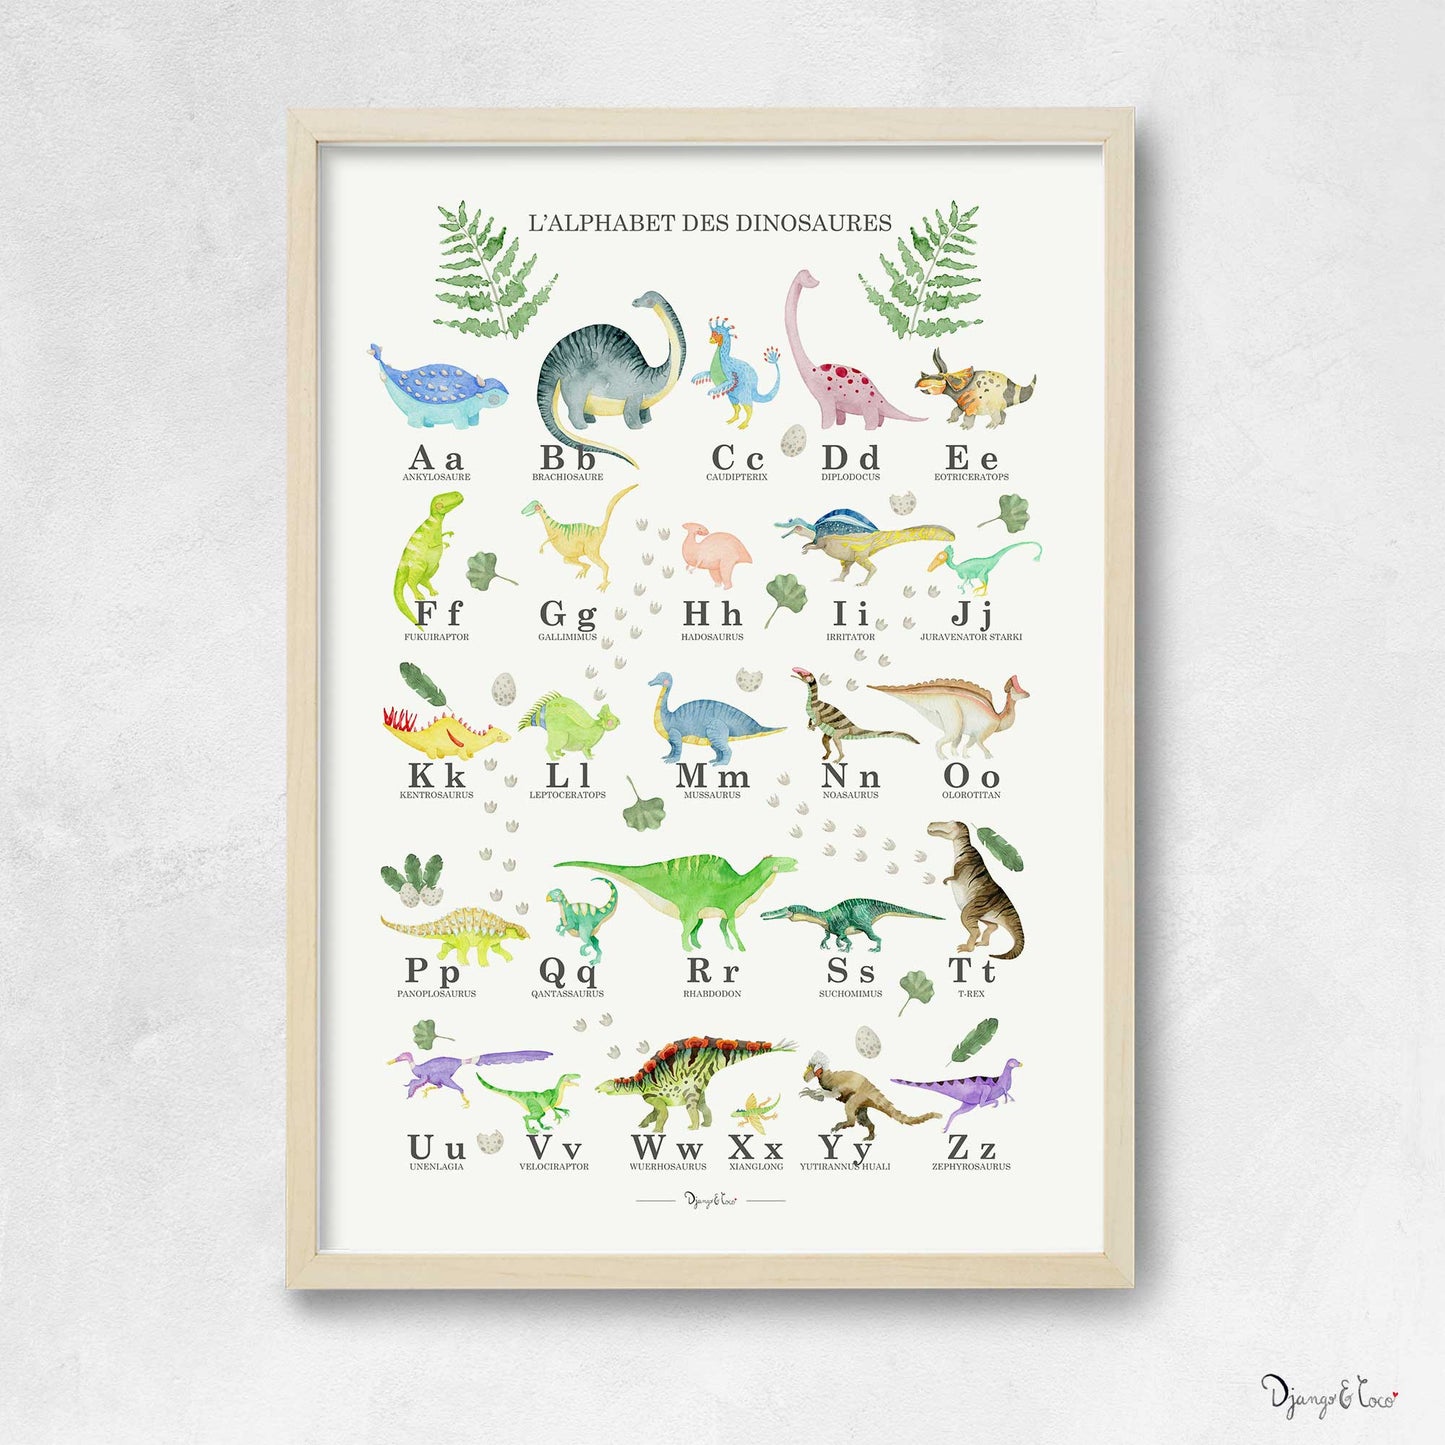 cadre en bois naturel avec affiche dinosaures